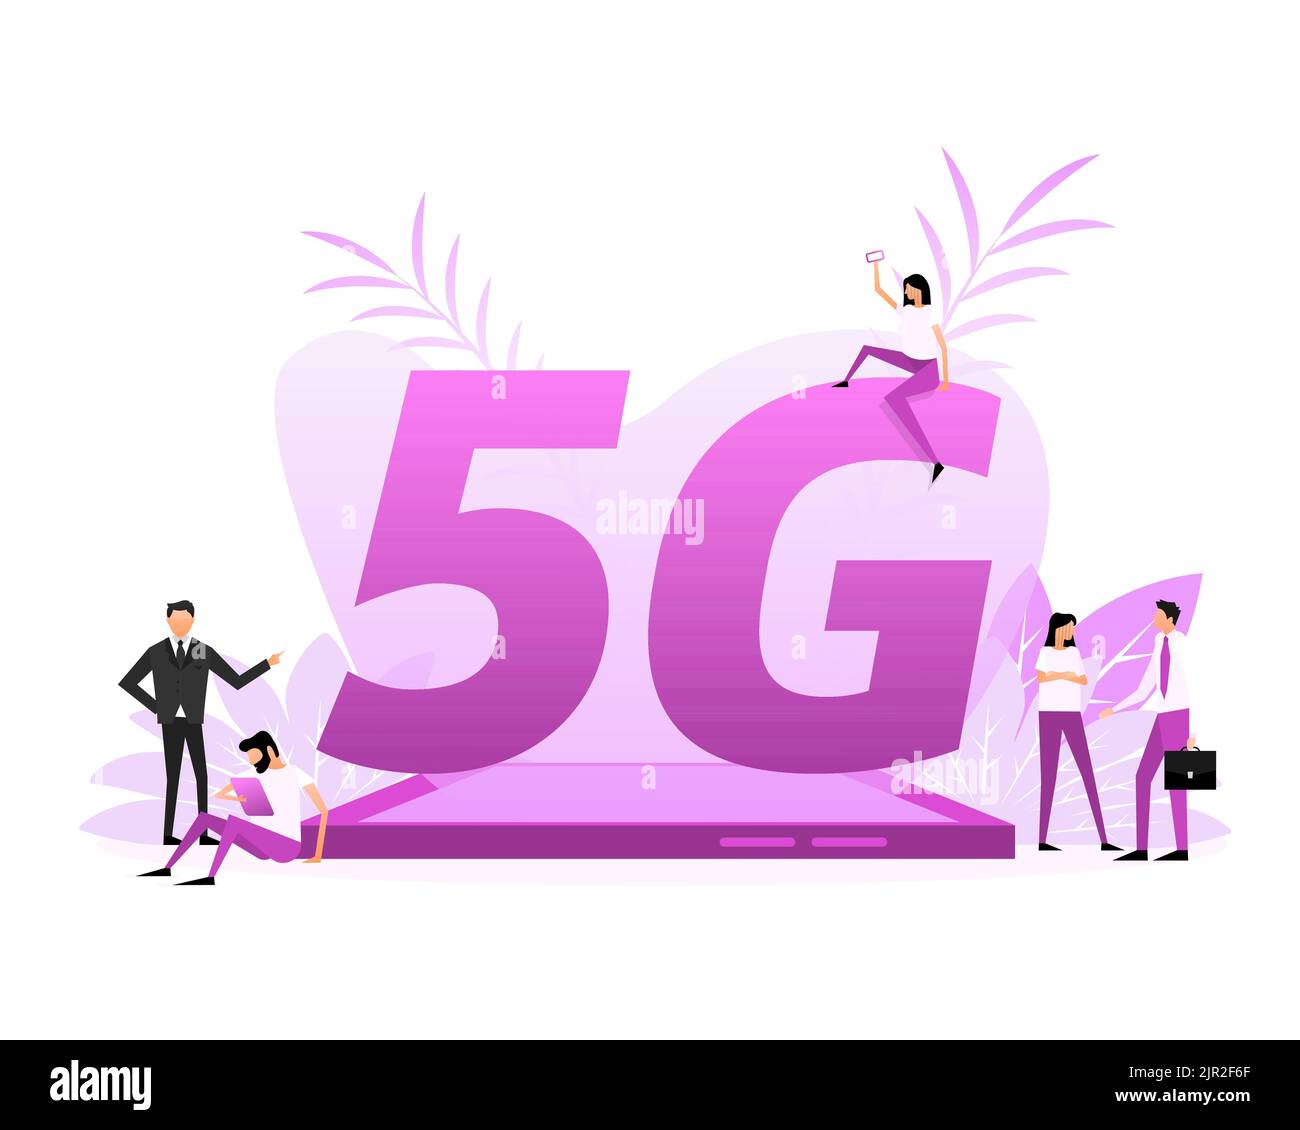 5G SIM-Karte. 4G Technologiehintergrund. Flache Schriftzeichen Stock Vektor